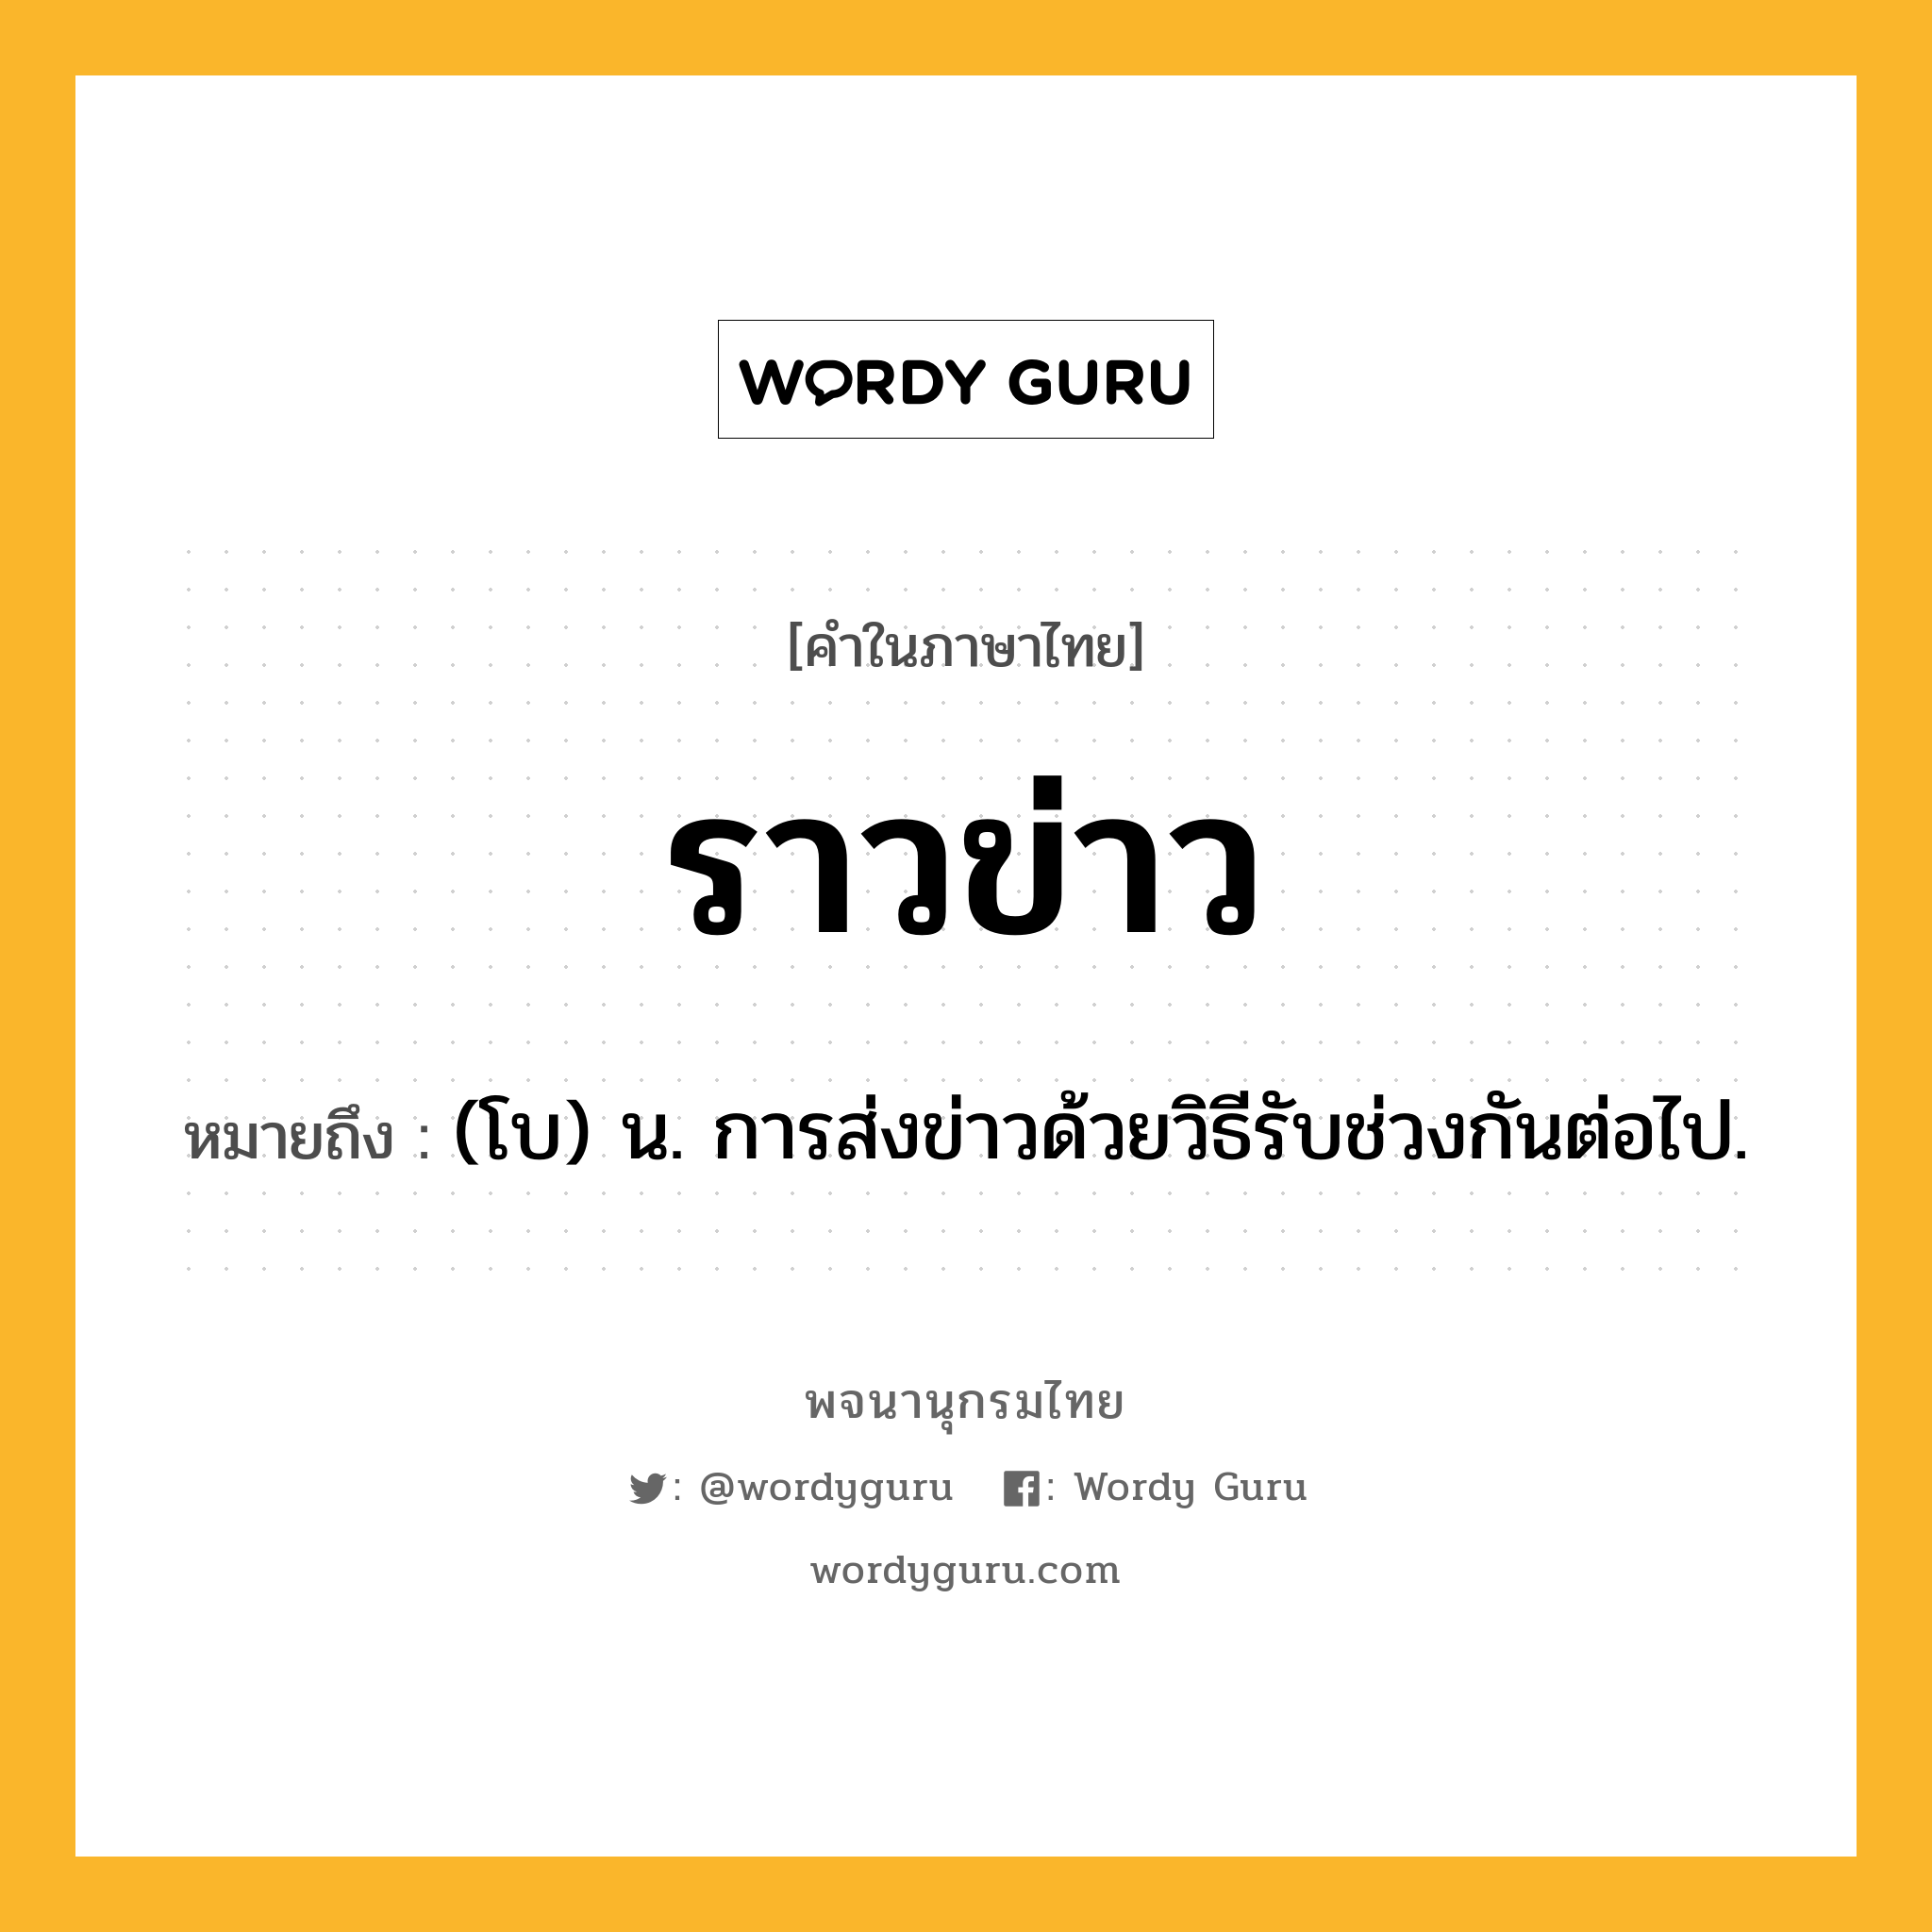 ราวข่าว หมายถึงอะไร?, คำในภาษาไทย ราวข่าว หมายถึง (โบ) น. การส่งข่าวด้วยวิธีรับช่วงกันต่อไป.